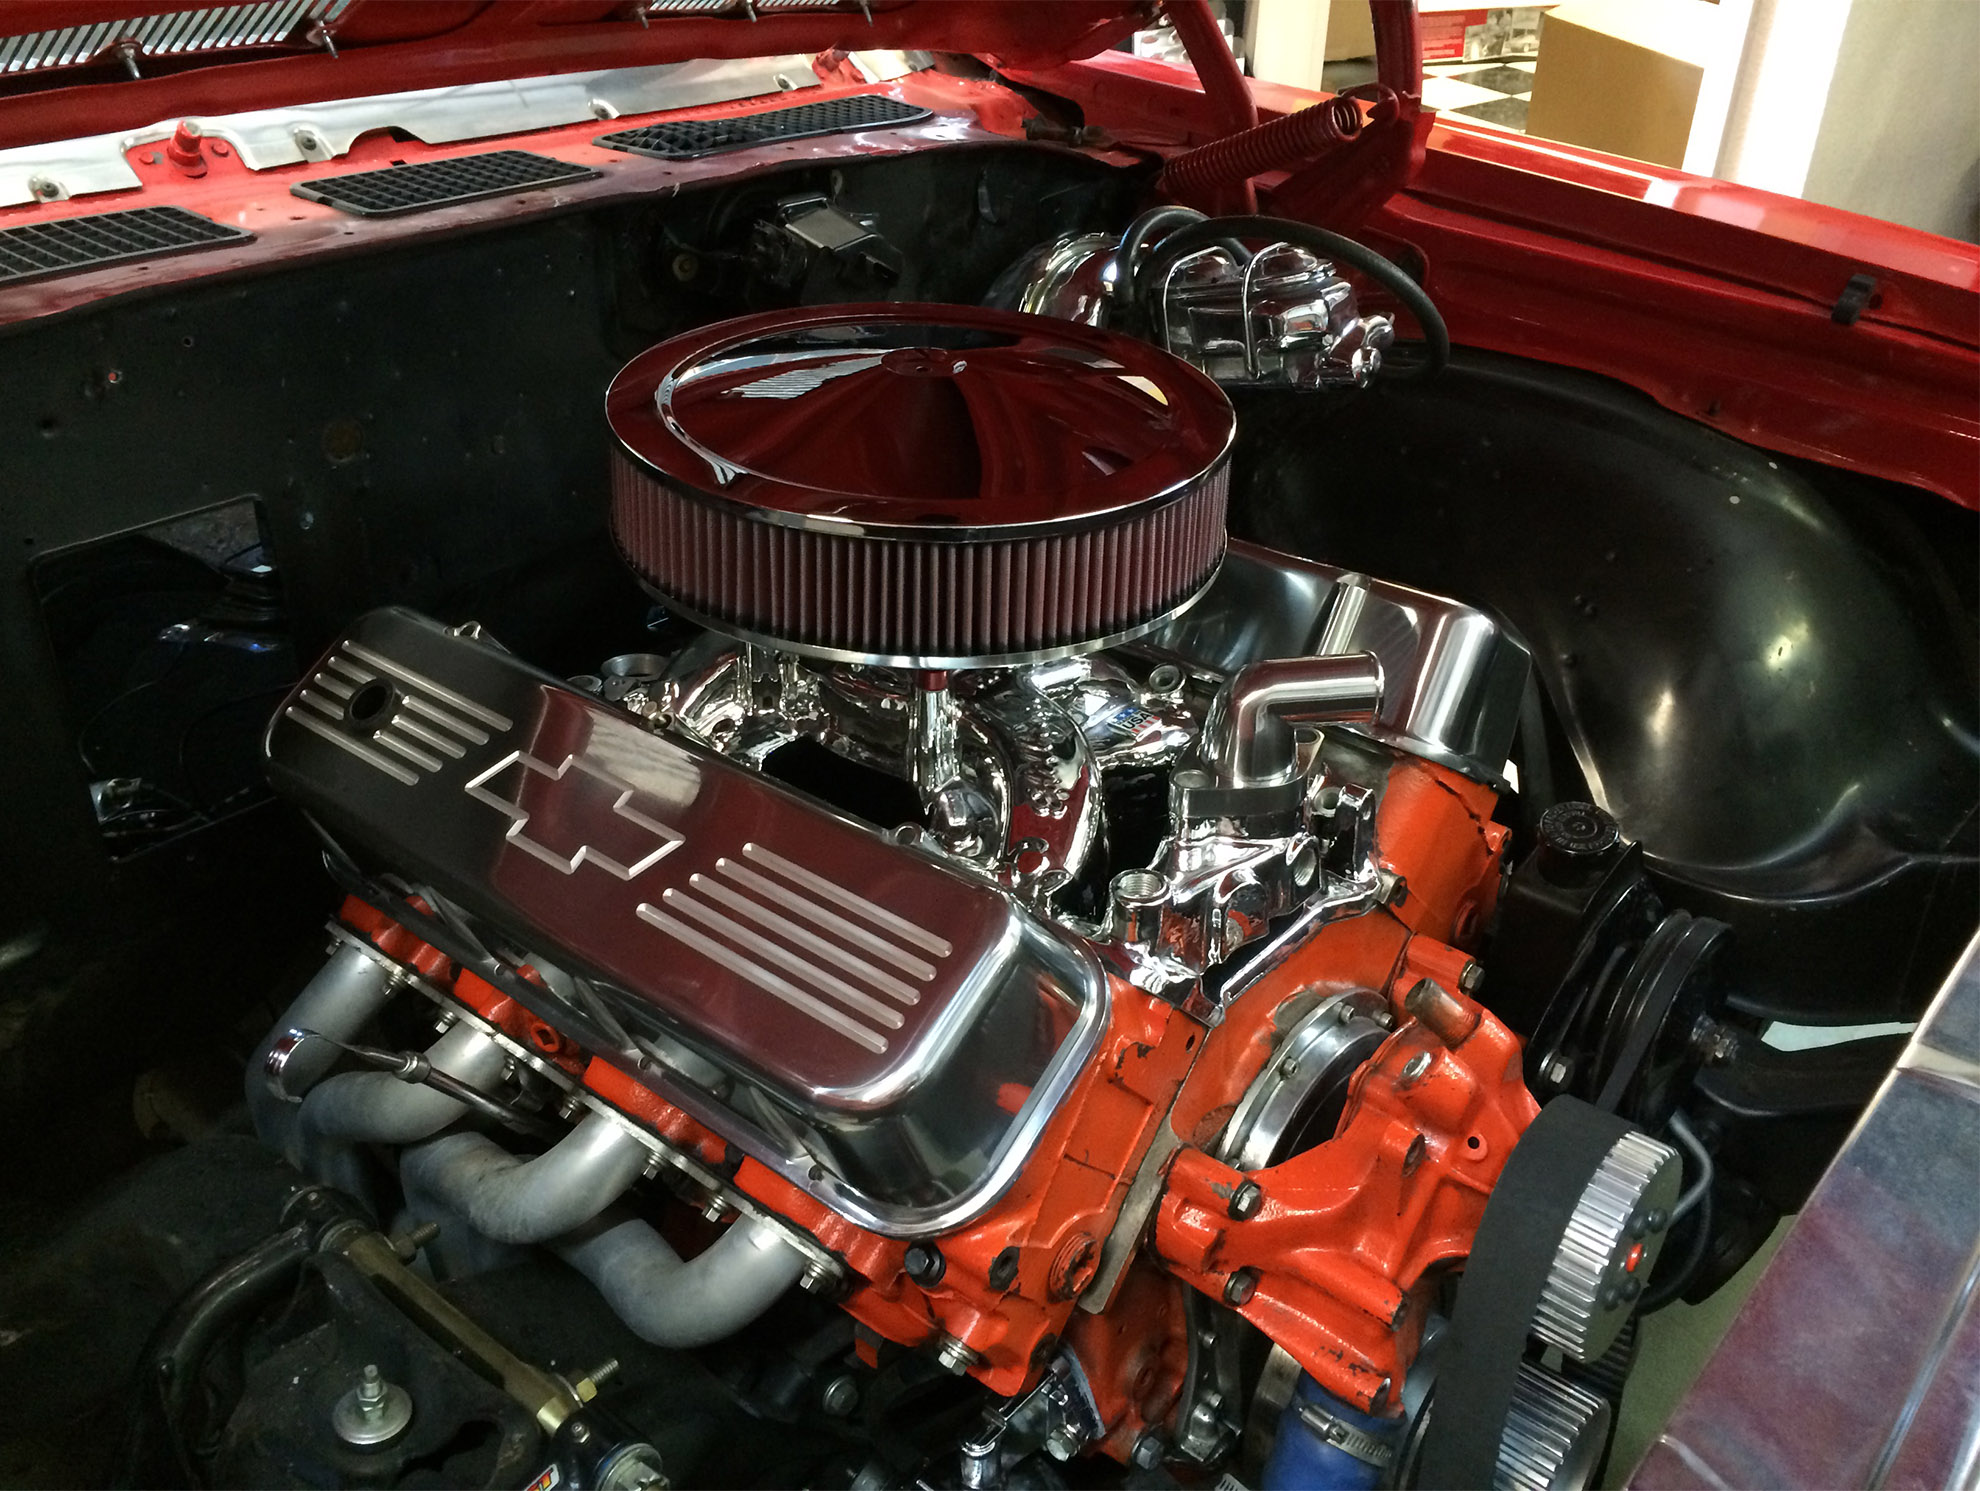 1969 Chevelle Engine